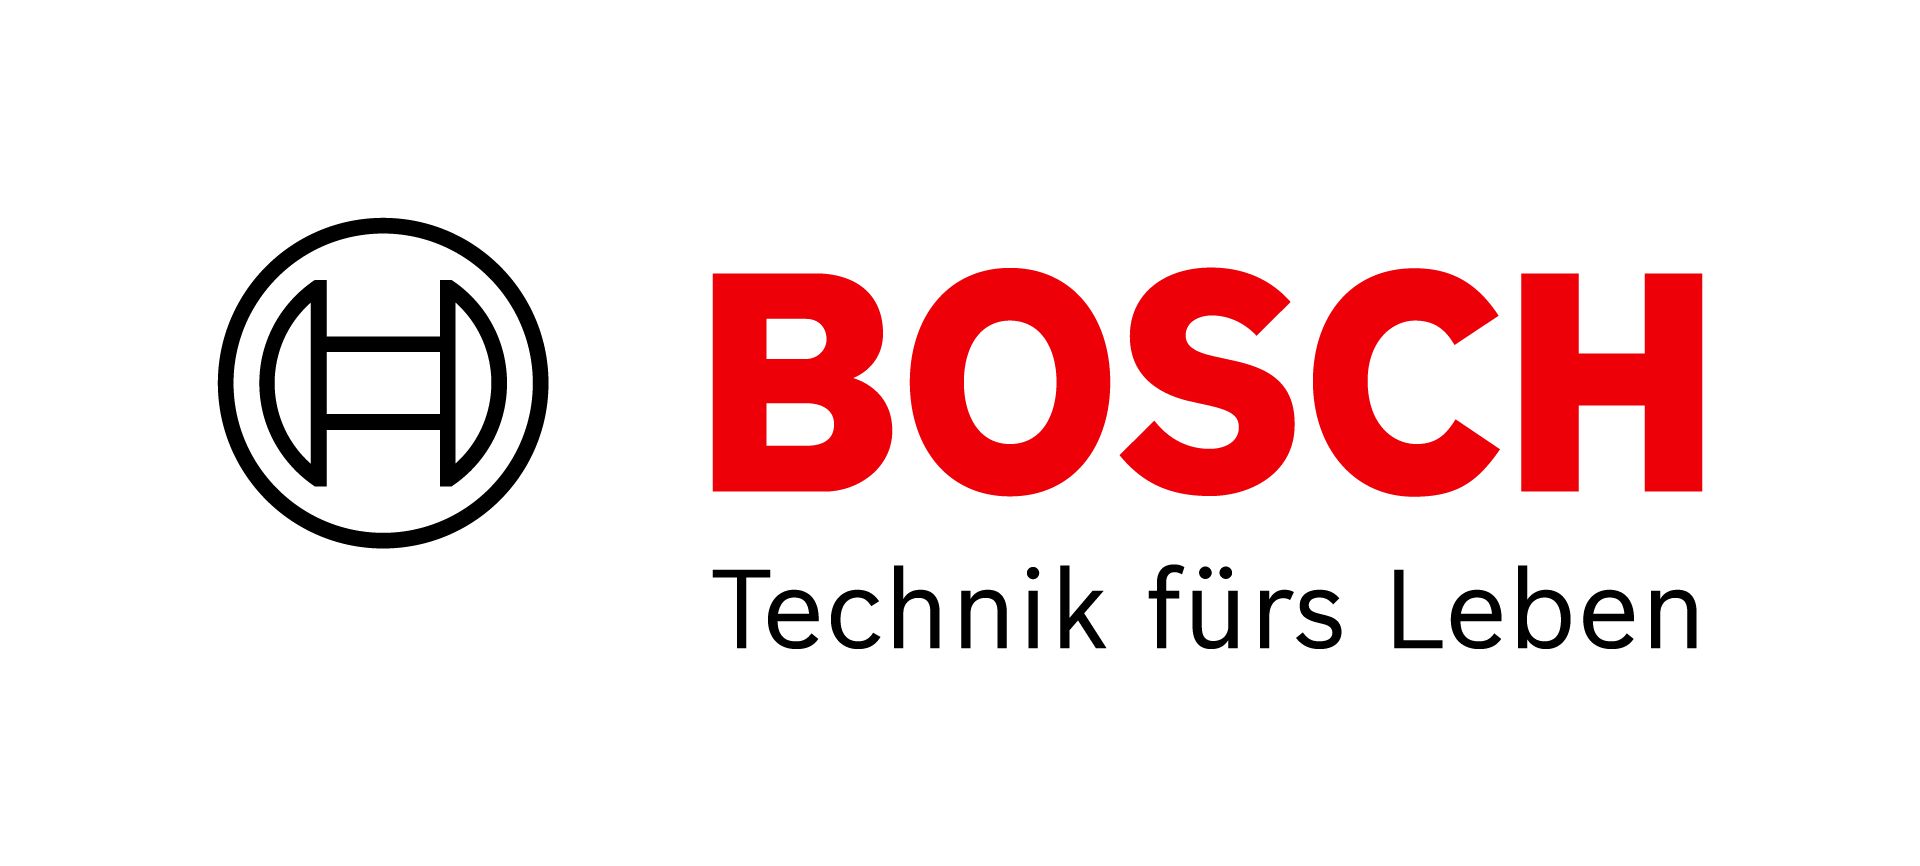 Logo of the Robert Bosch AG